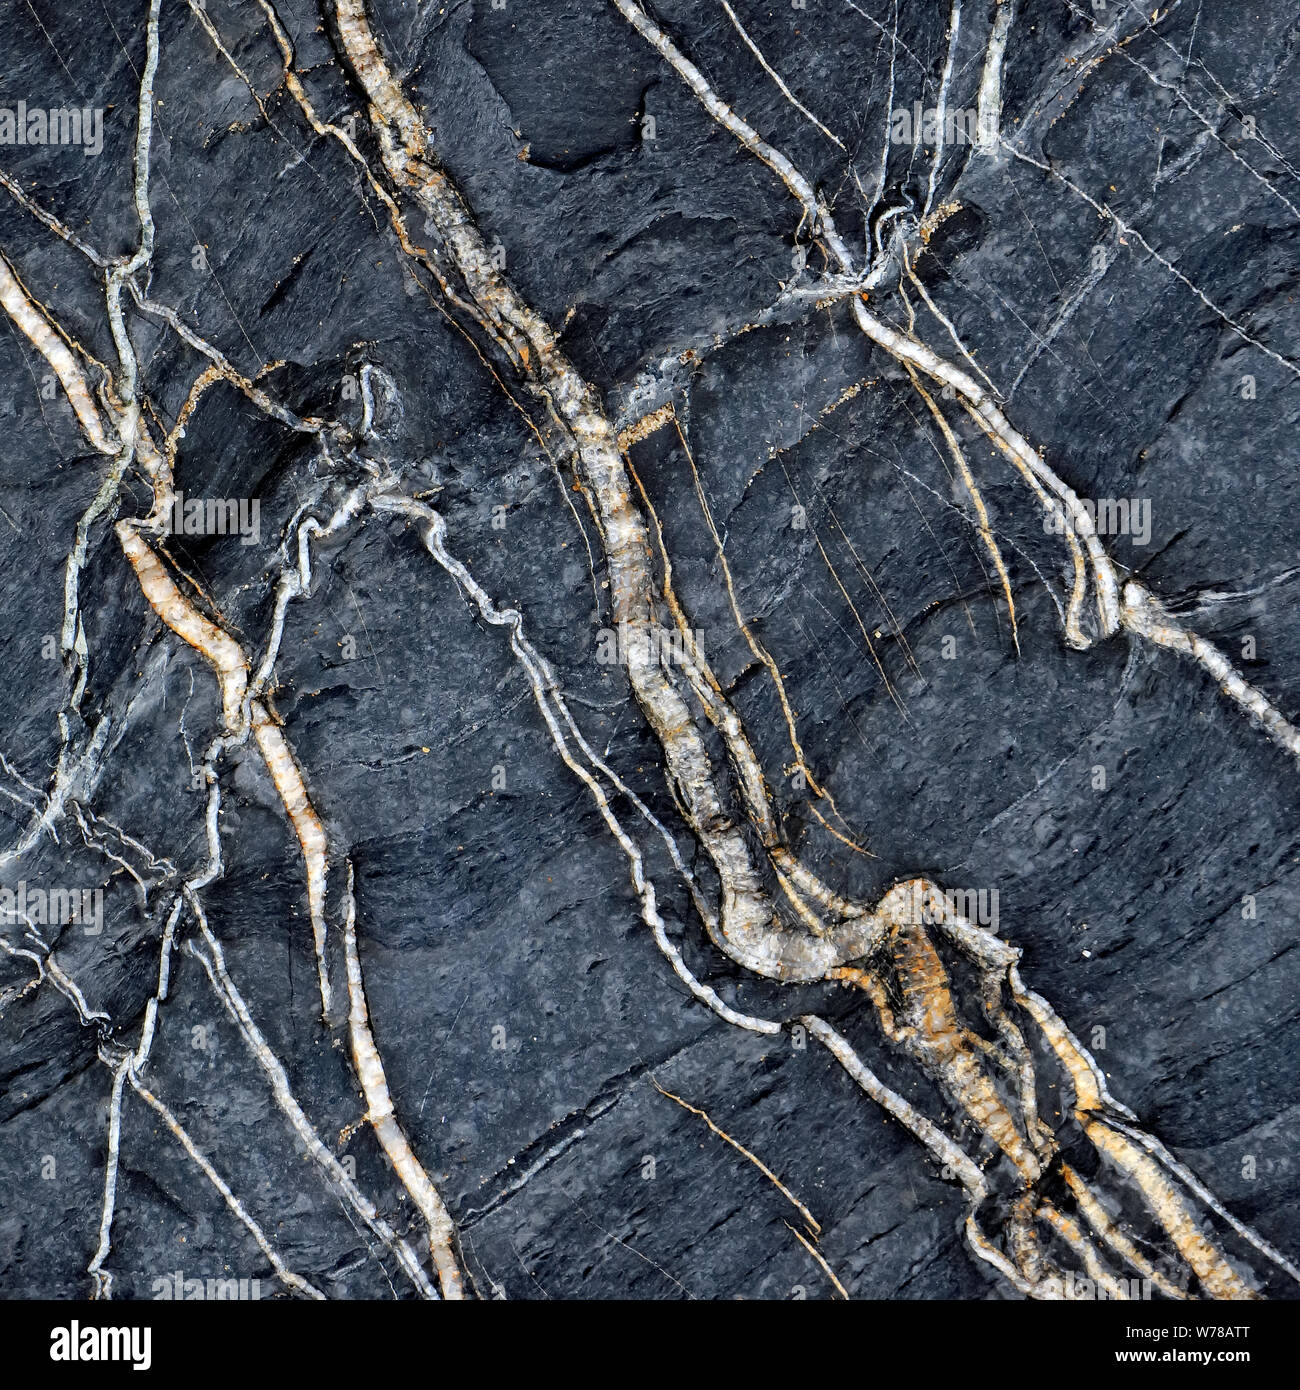 Natur Foto von Marine Geologie, zufälligen Muster, Struktur, Form, mit einer dezenten Farbe Paletten in einem halb abstrakten Stil auf die Cardigan Bay Wa Stockfoto